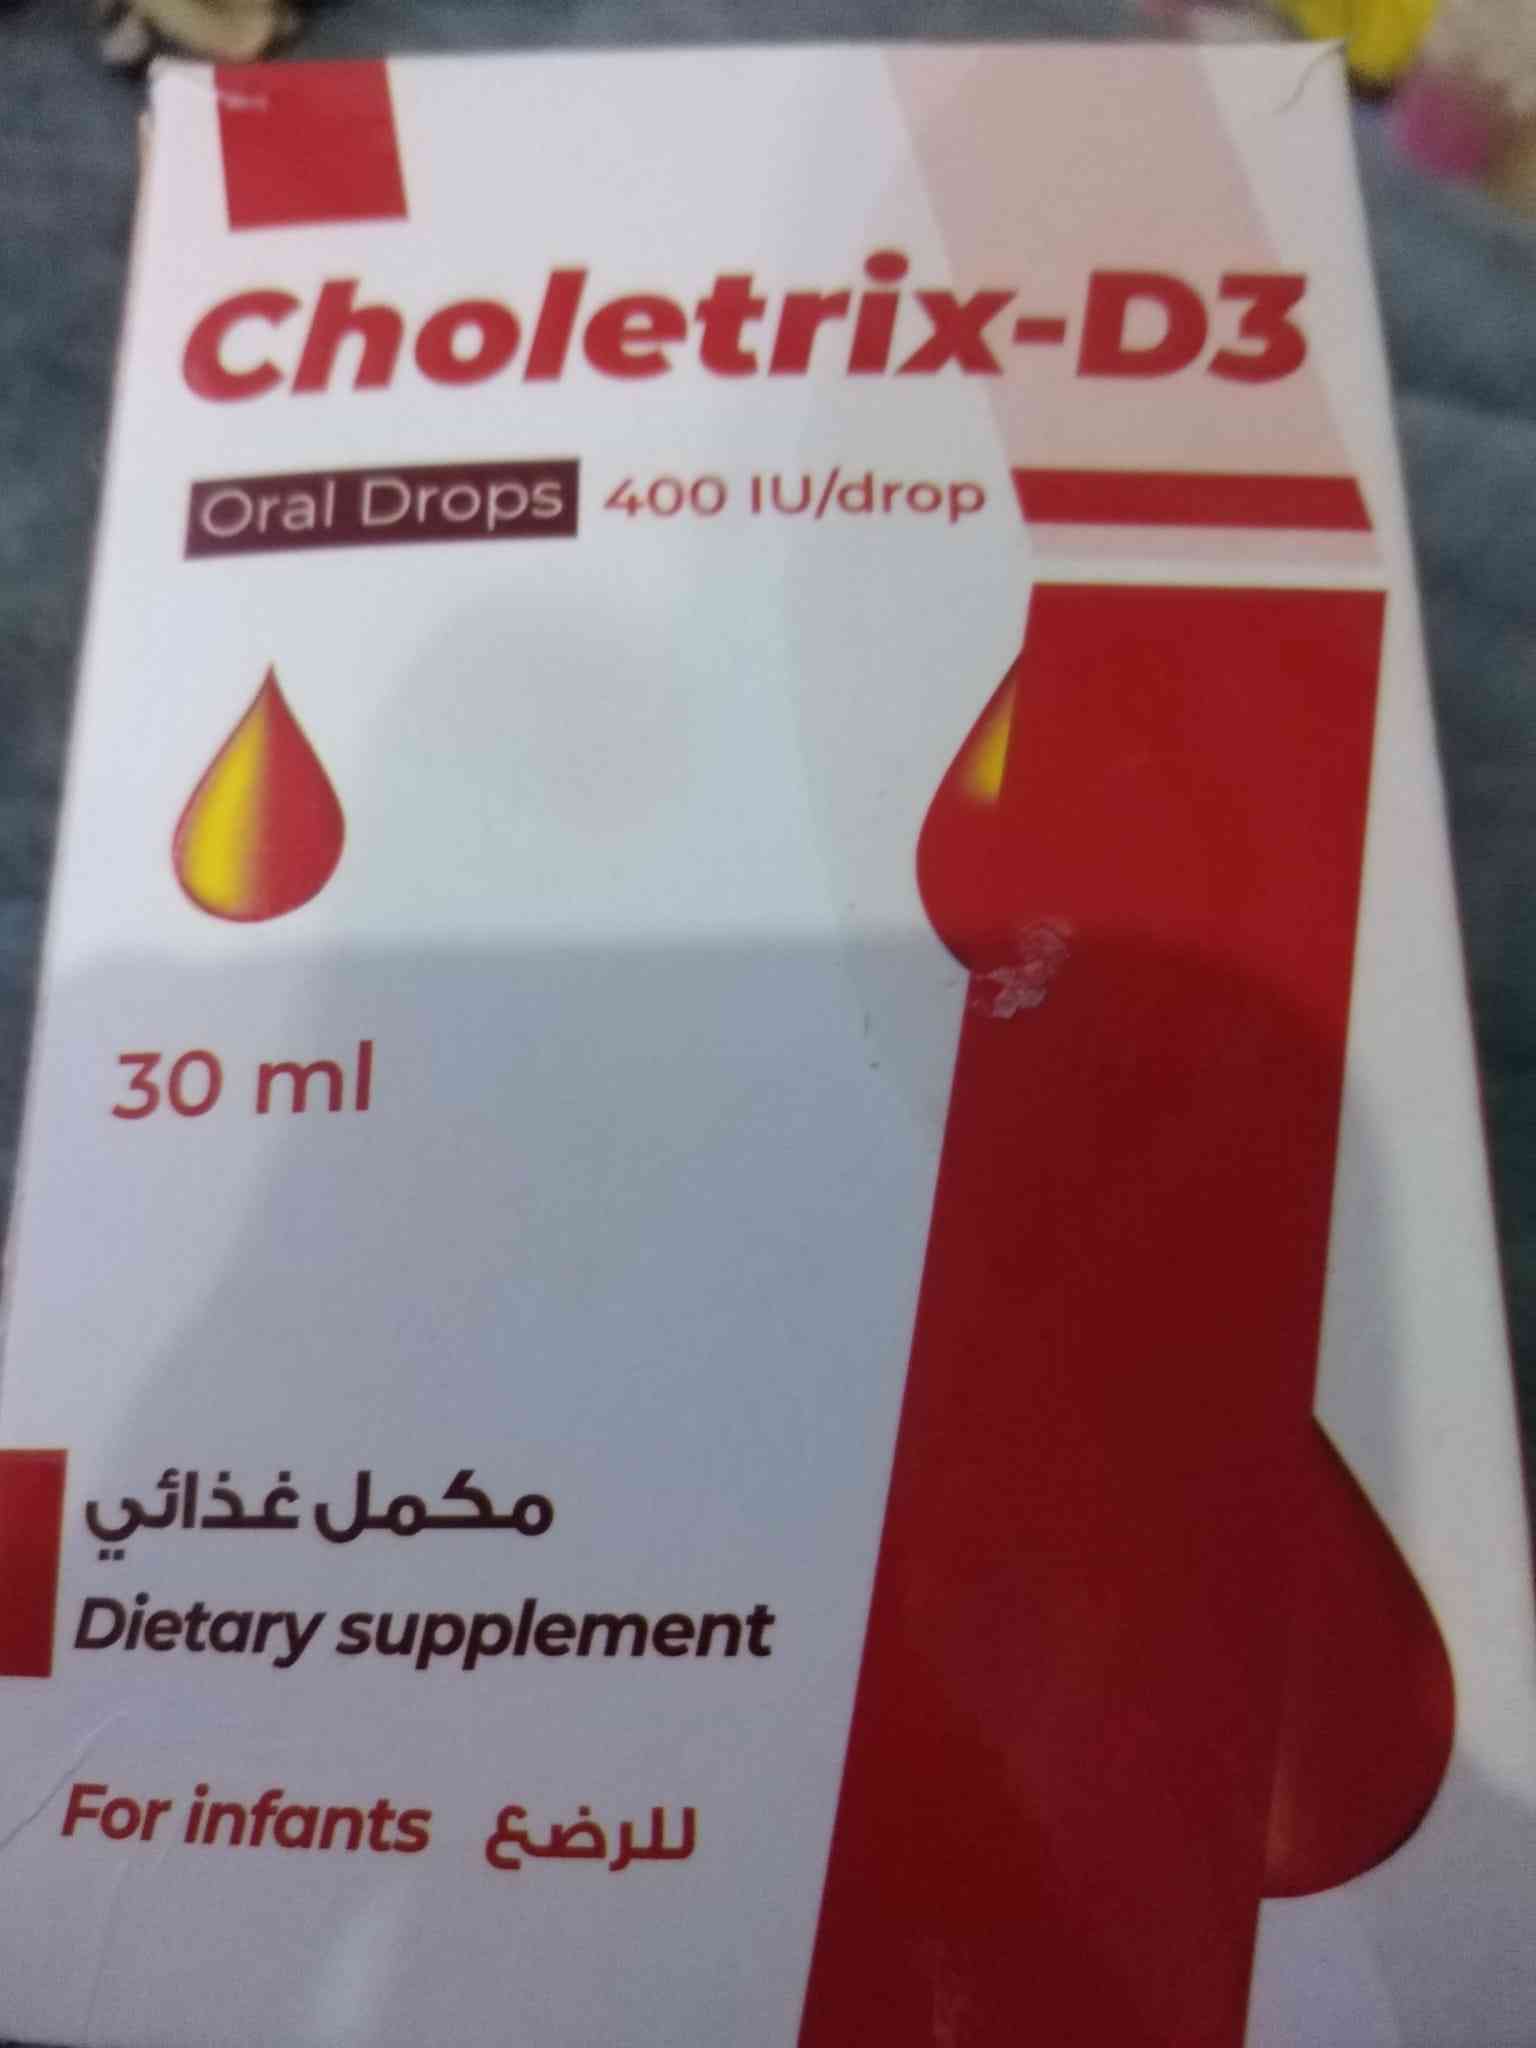 choletrix-d3 400 iu oral drops 30ml